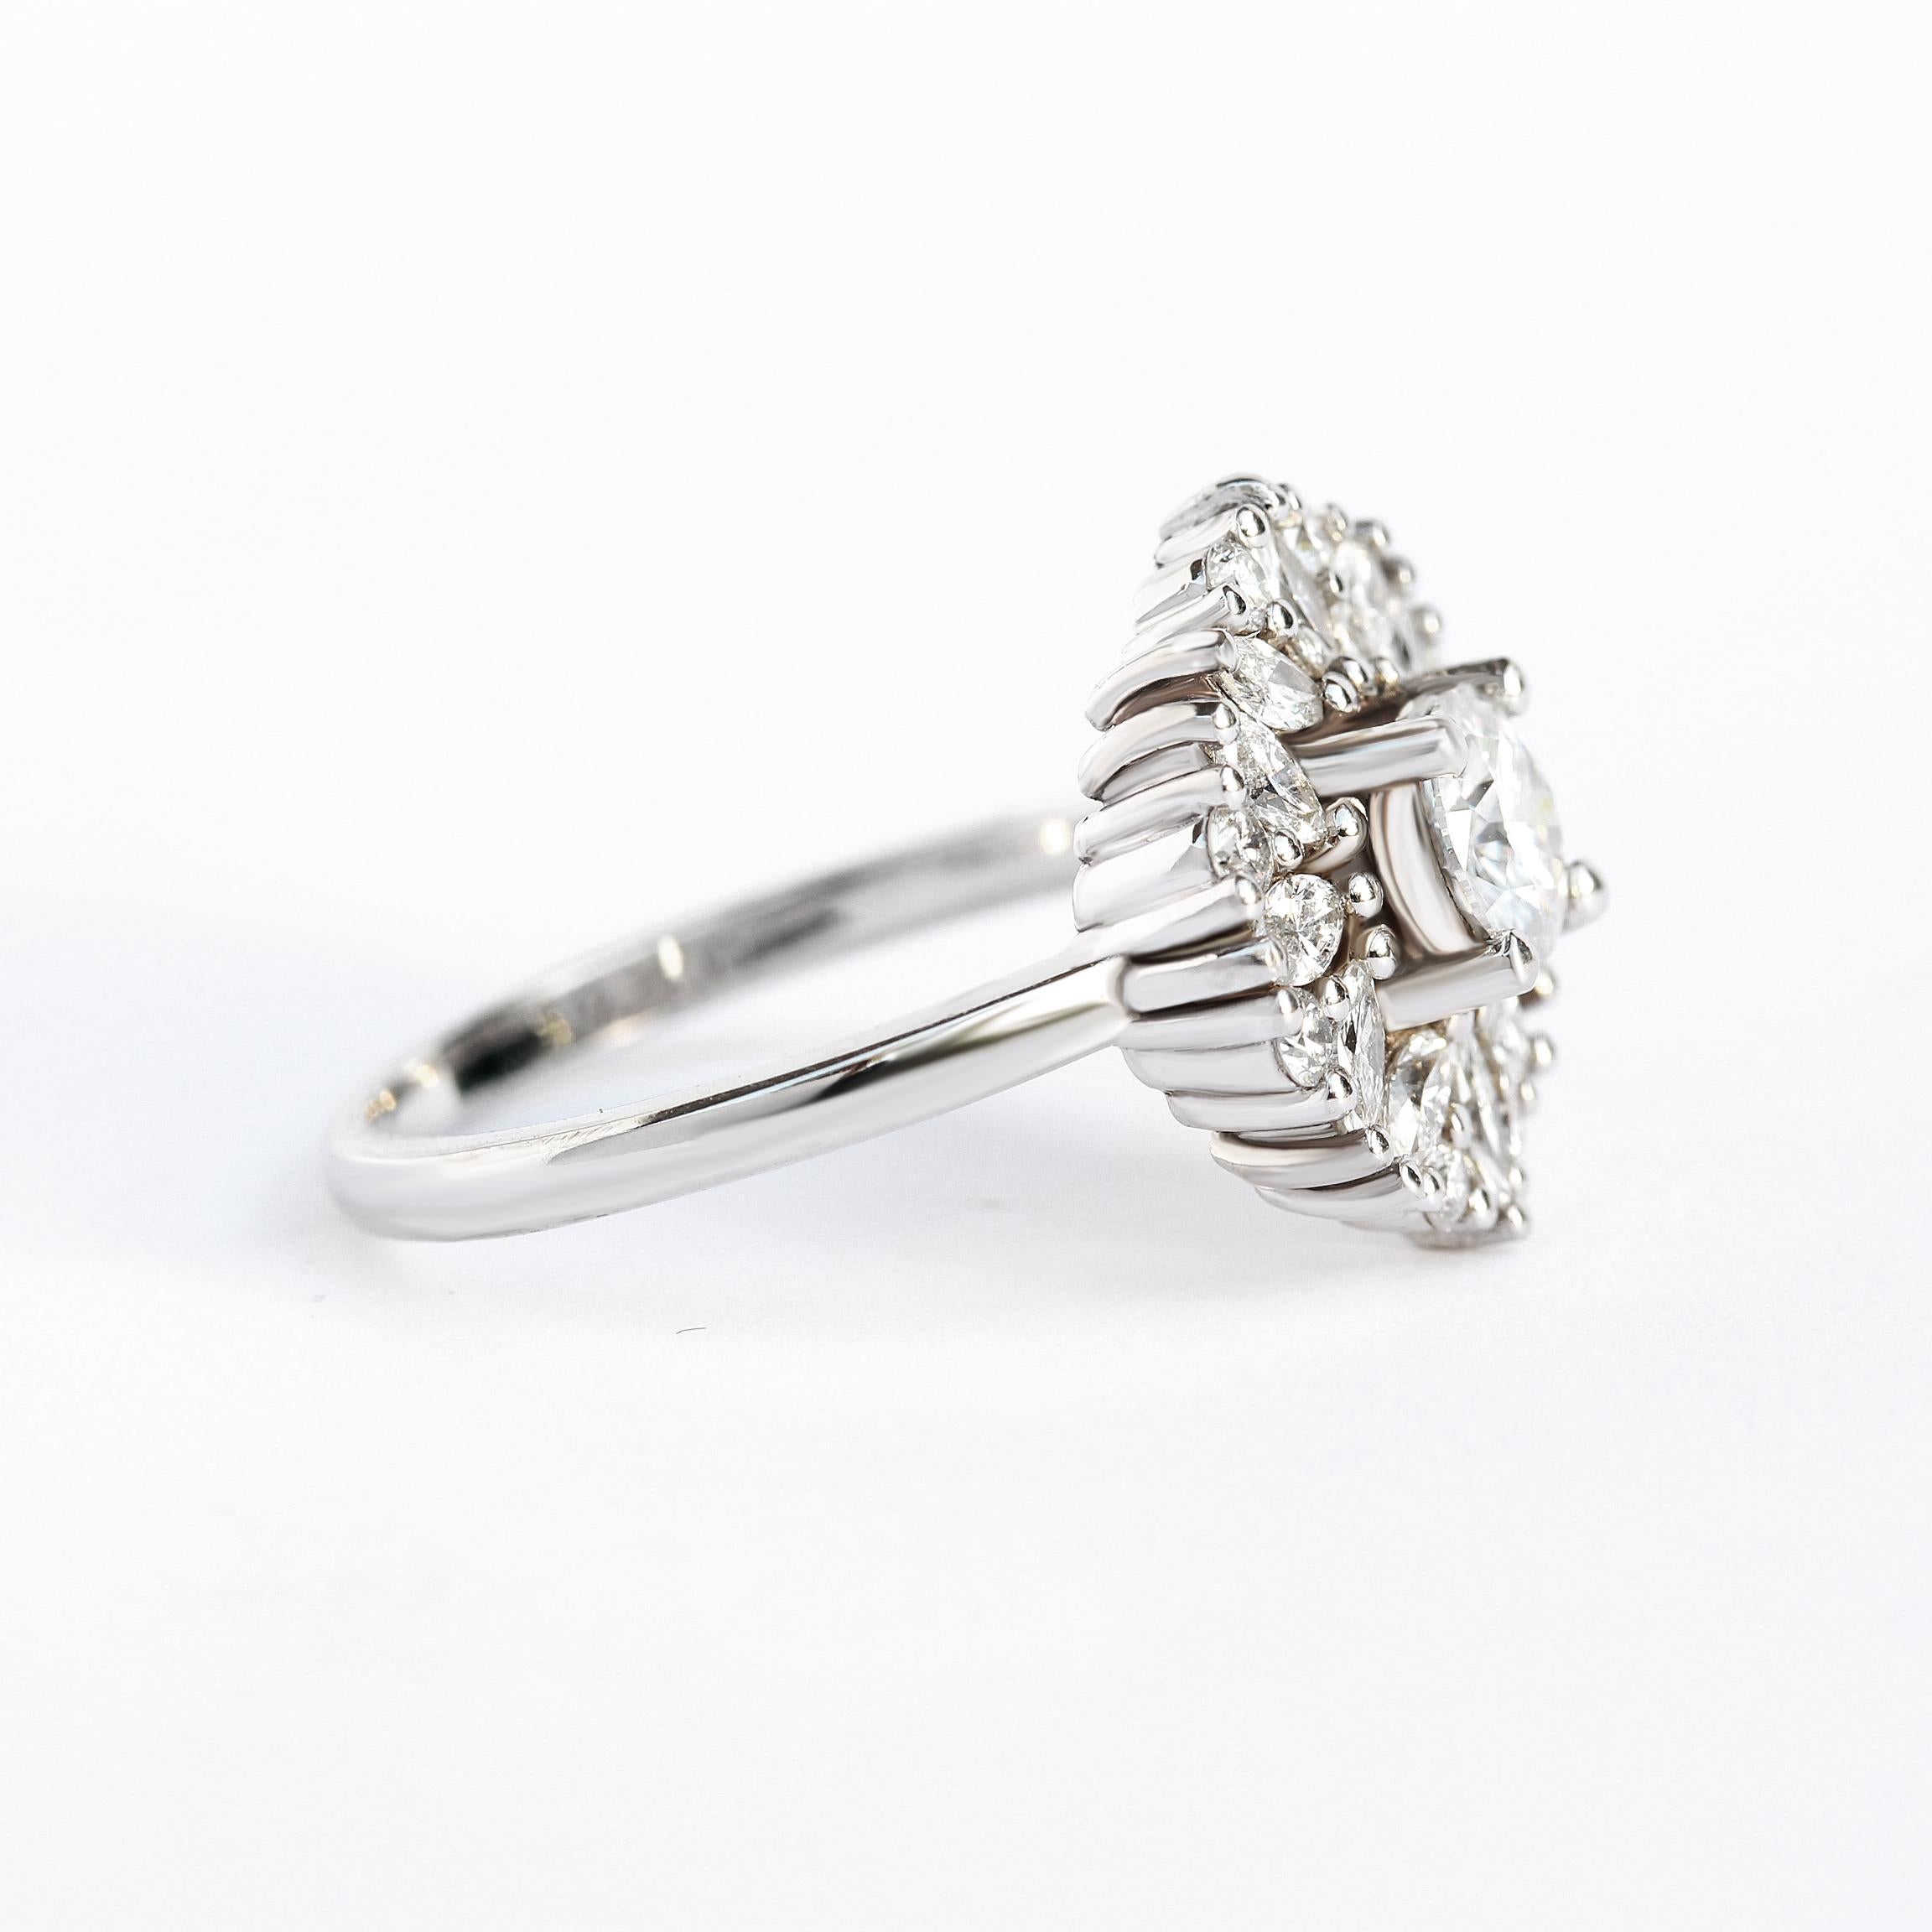 Art Deco Round Moissanite Engagement Ring in 14K White Gold - 